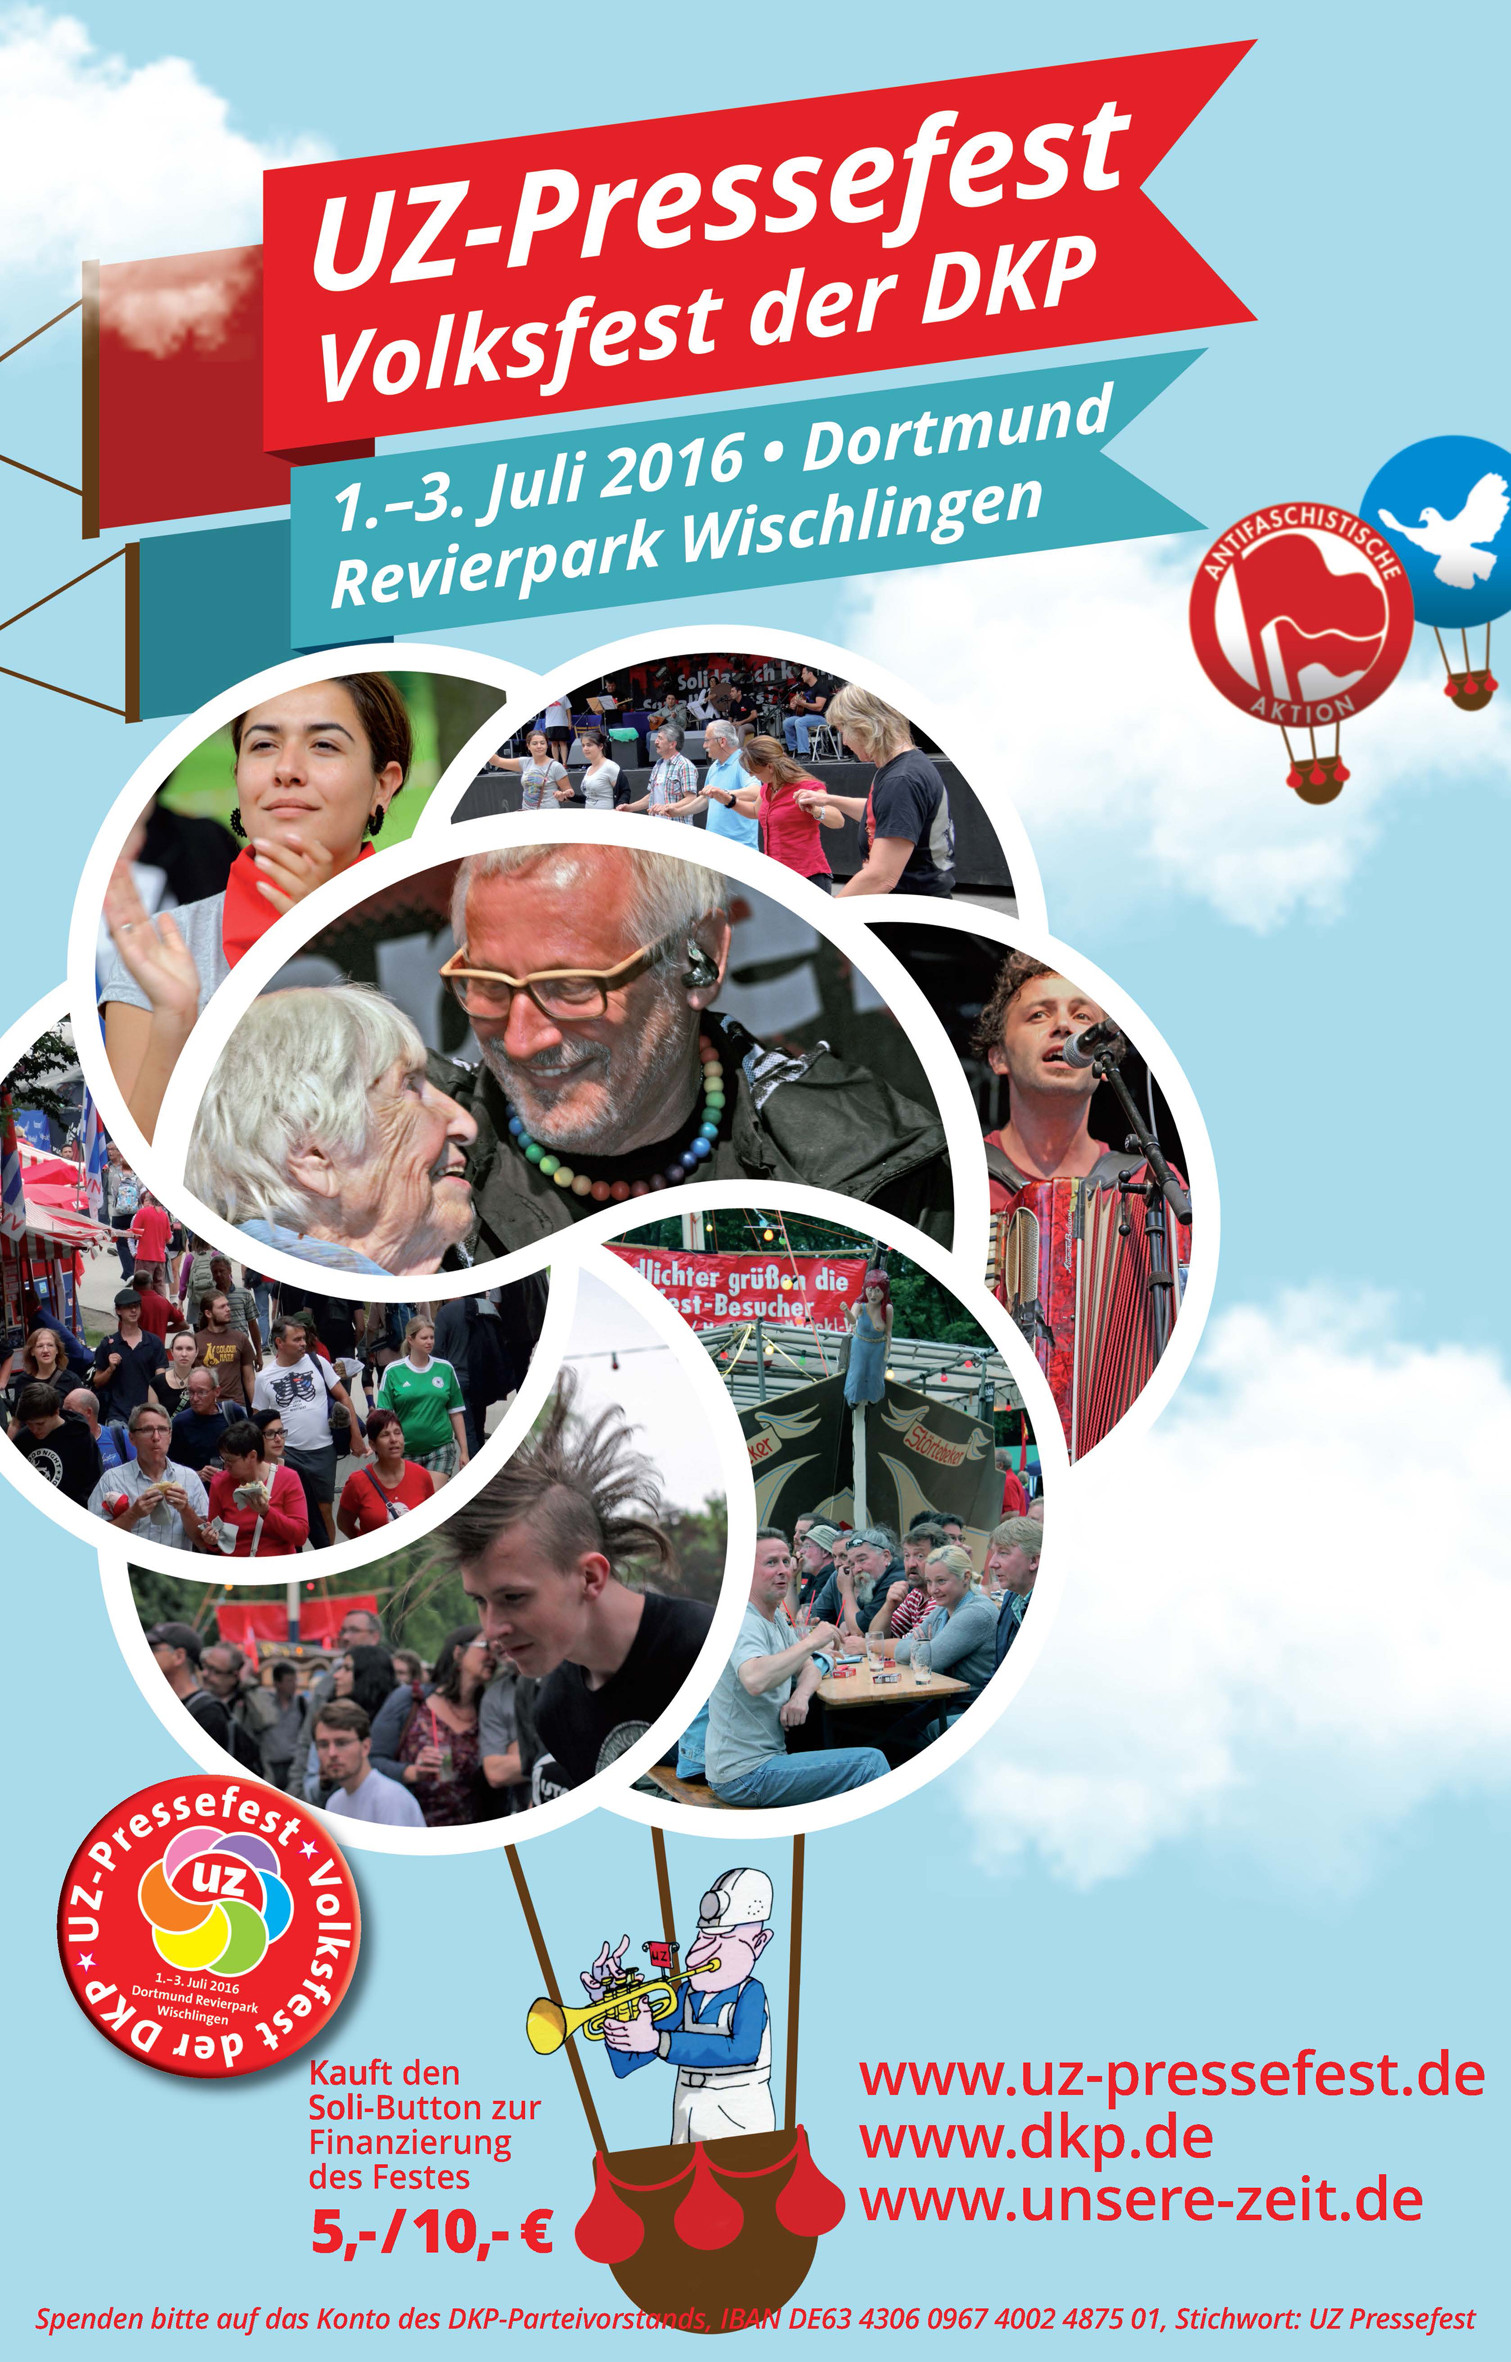 uz pressefest volksfest der dkp - UZ-Pressefest - Volksfest der DKP - UZ-Pressefest 2016 - Kultur